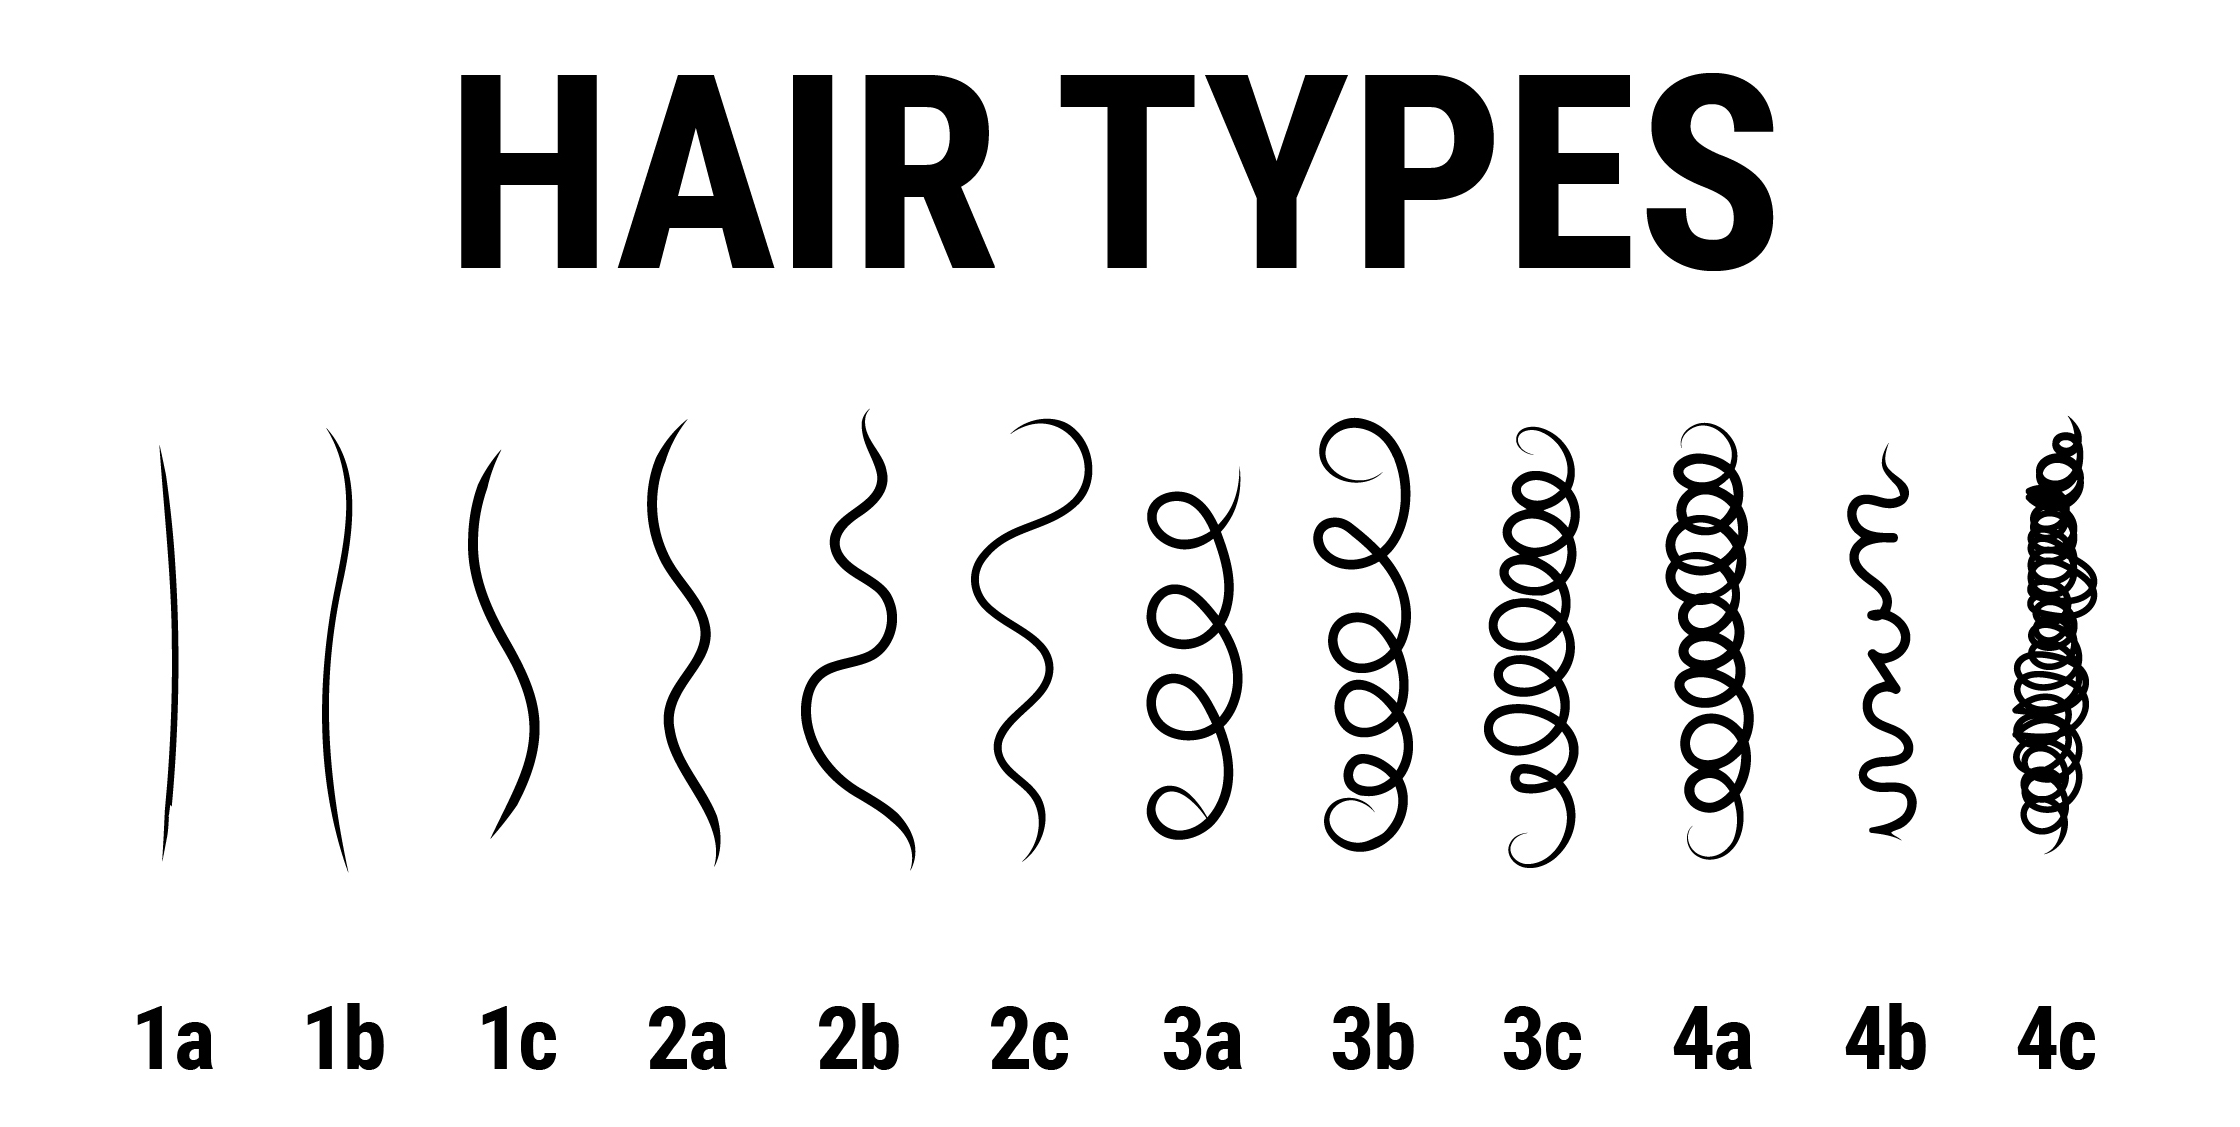 hair texture chart